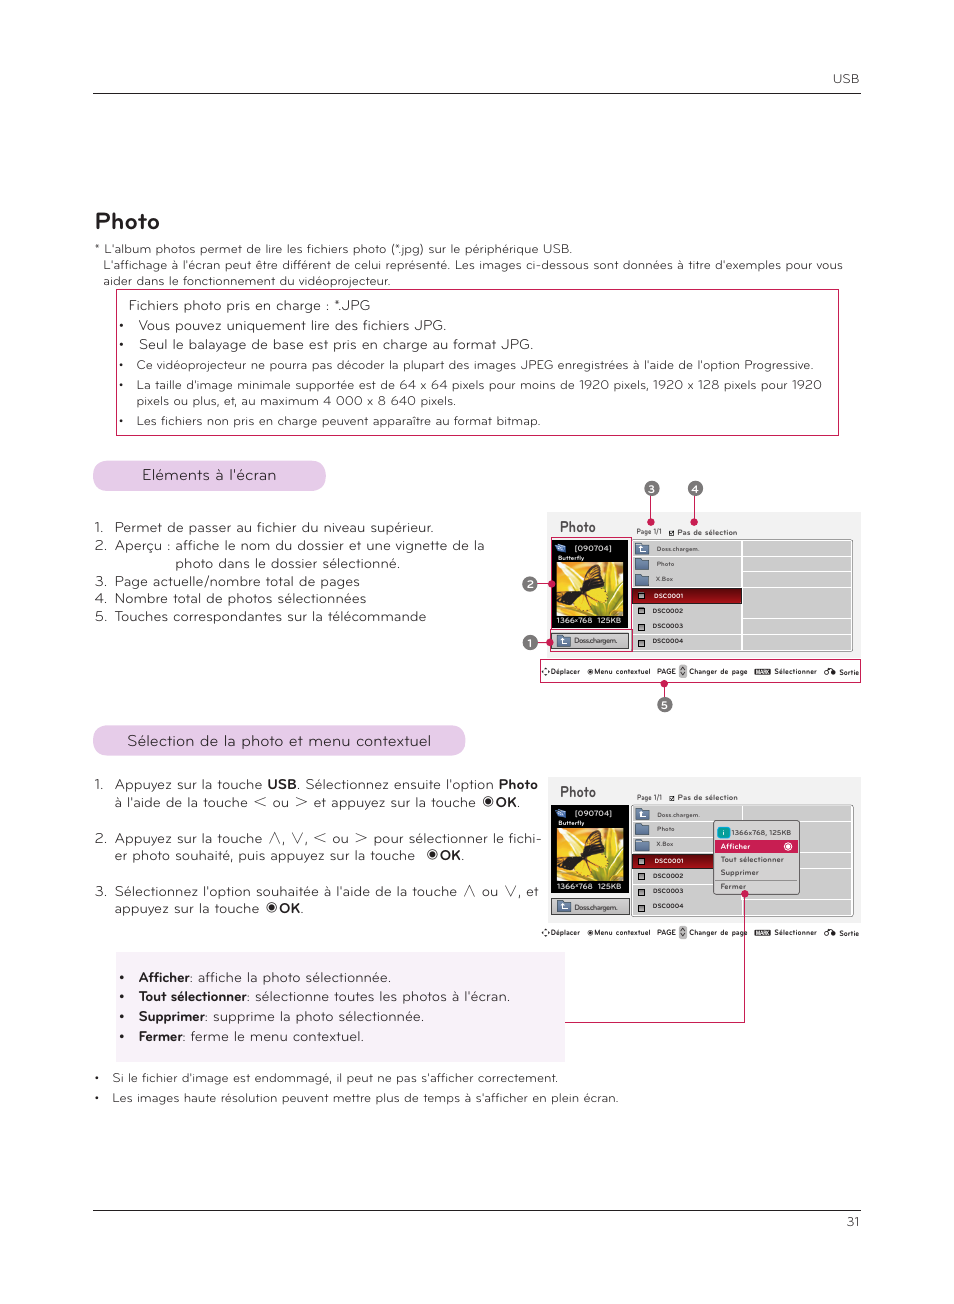 Photo, Eléments à l'écran, Sélection de la photo et menu contextuel | LG HS200G Manuel d'utilisation | Page 31 / 42